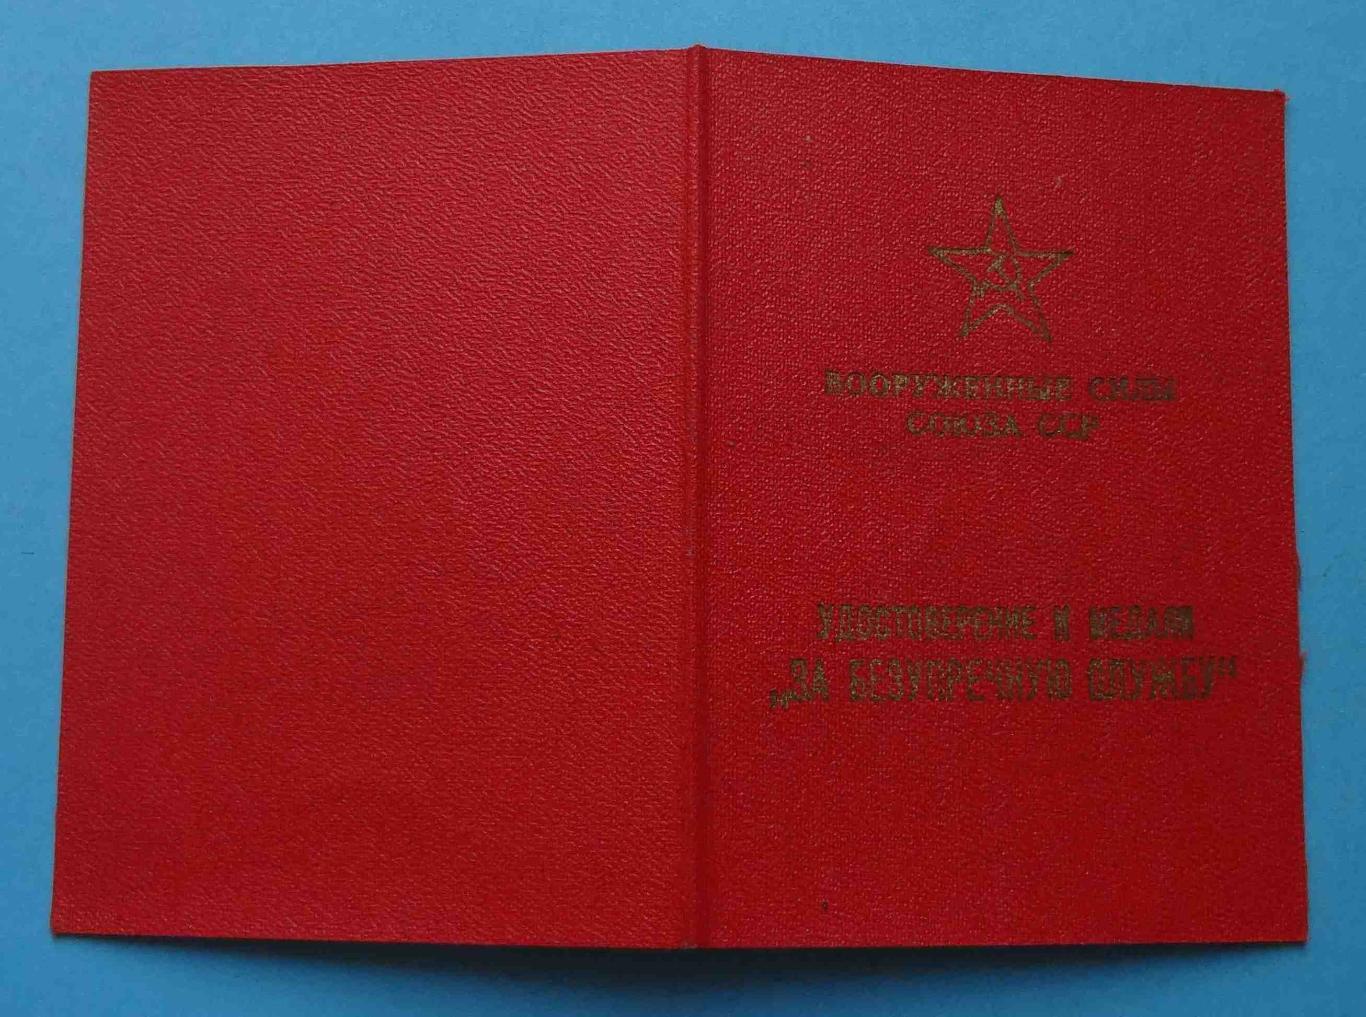 Удостоверение За безупречную службу в ВС СССР 2 степени в/ч 32180 док (14) 1